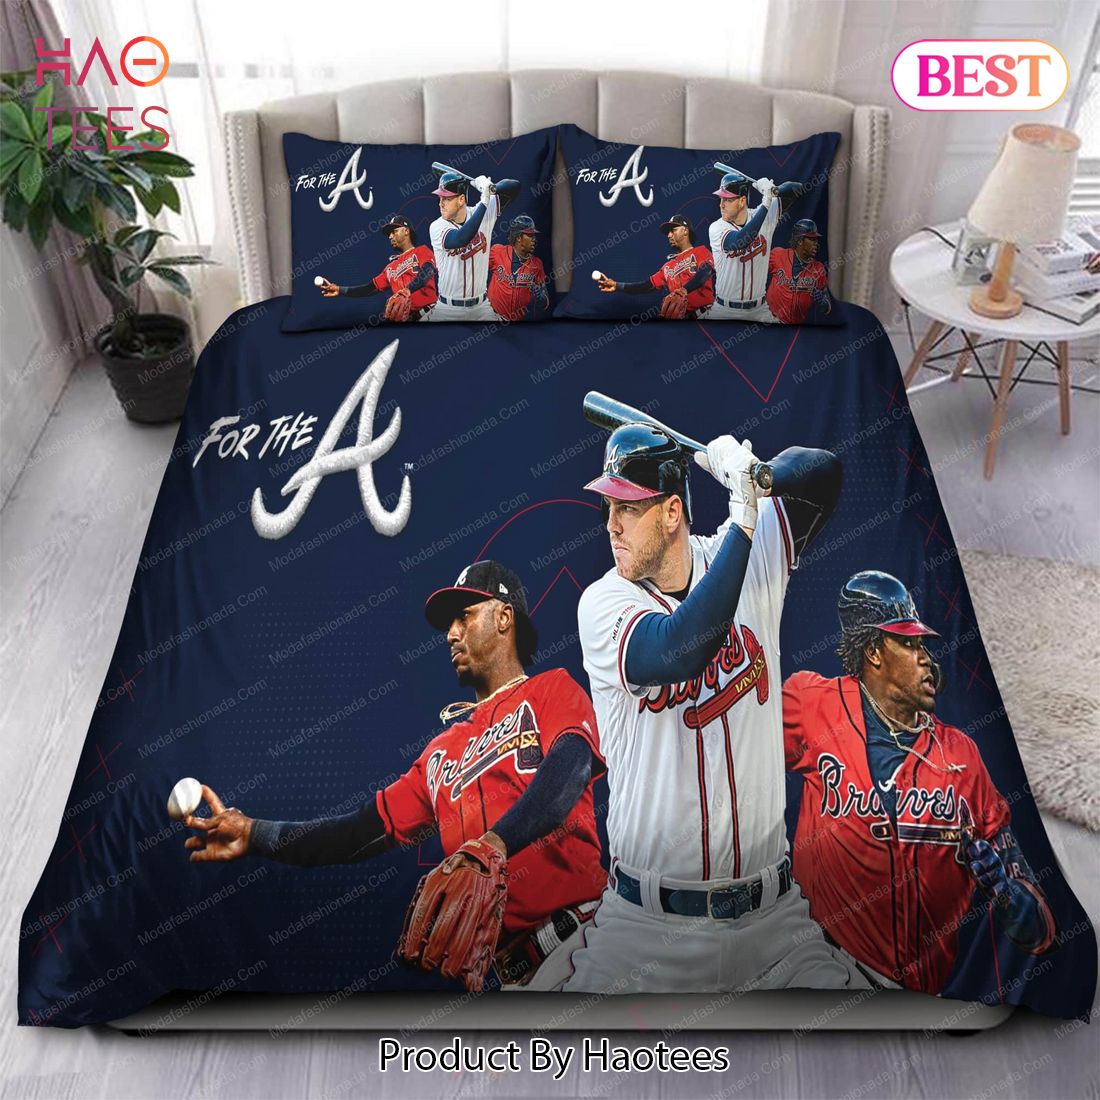 Buy Memory Freddie Freeman Atlanta Braves MLB 47 Bedding Sets Bed Sets, Bedroom Sets, Comforter Sets, Duvet Cover, Bedspread